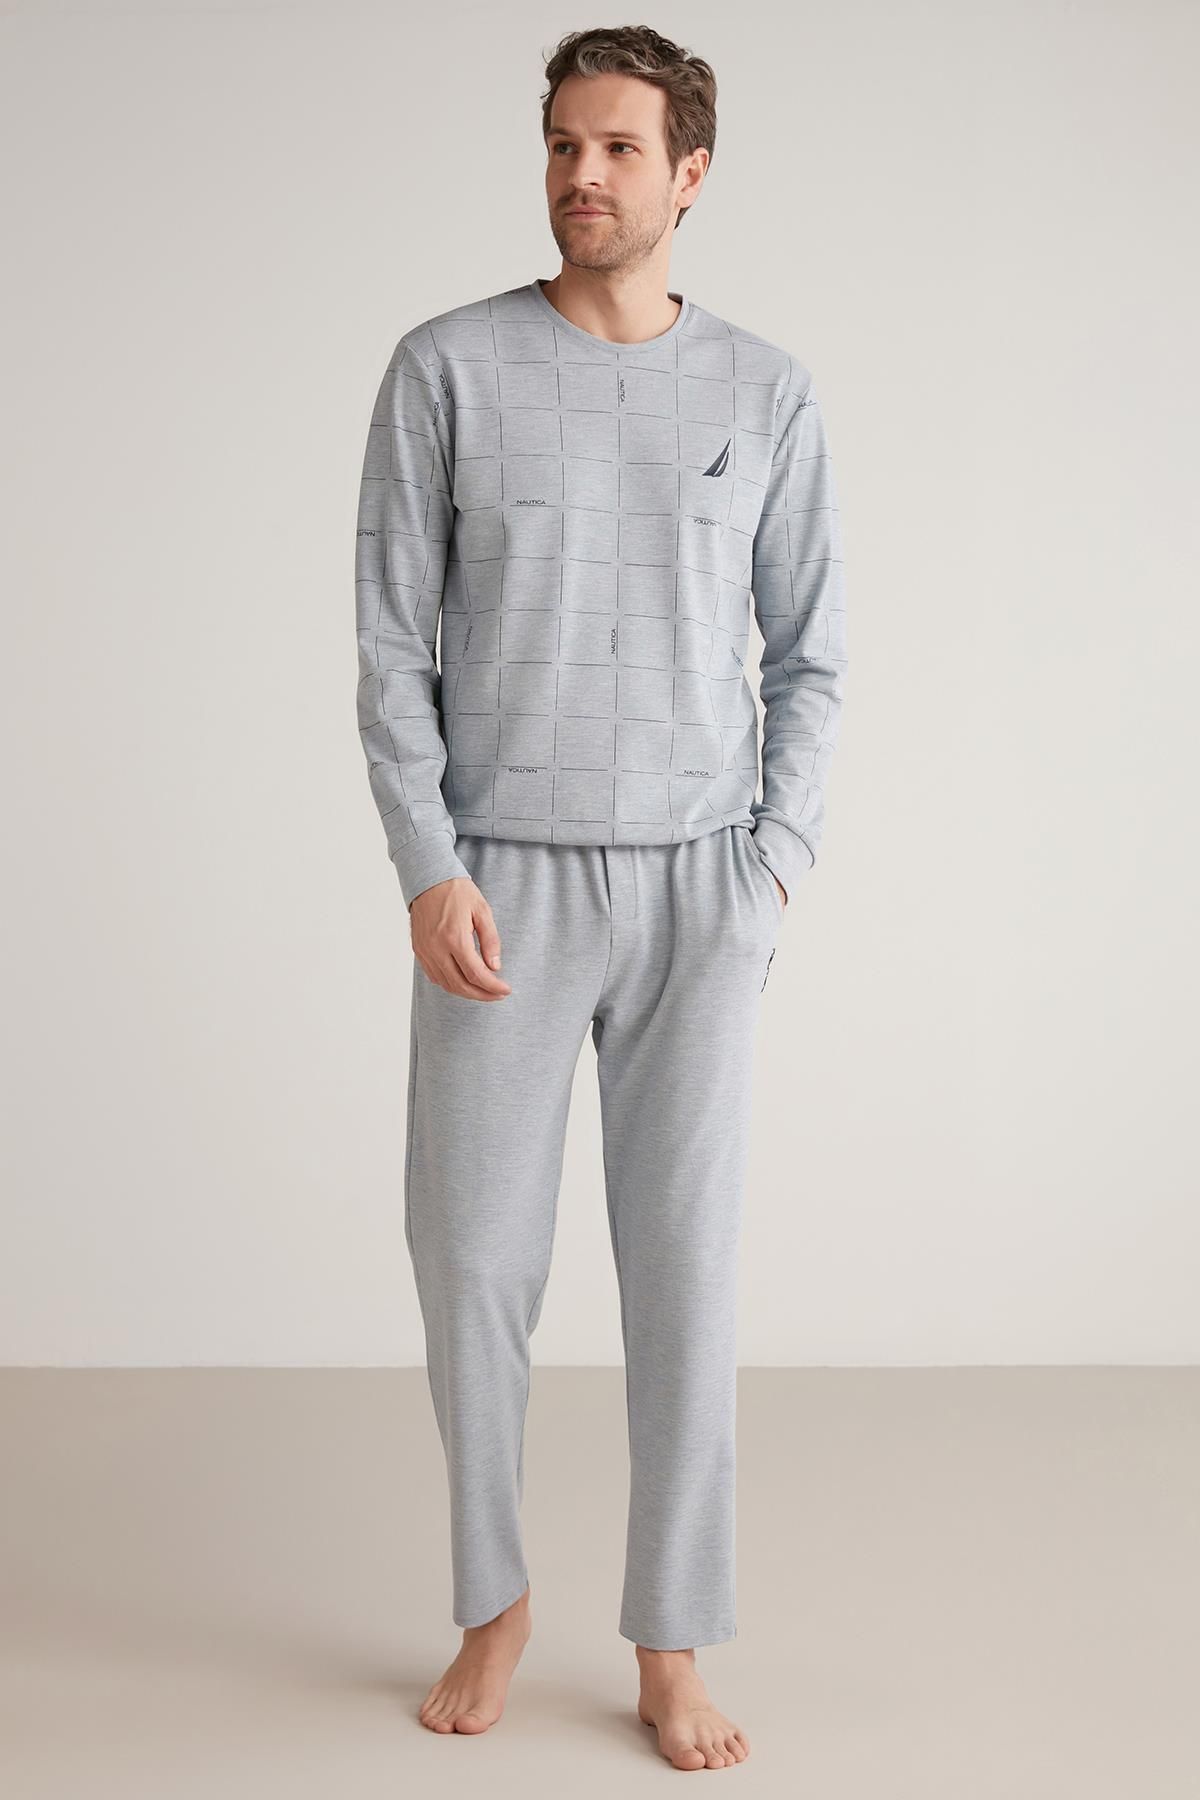 Nautica Comfort mood pijama takımı